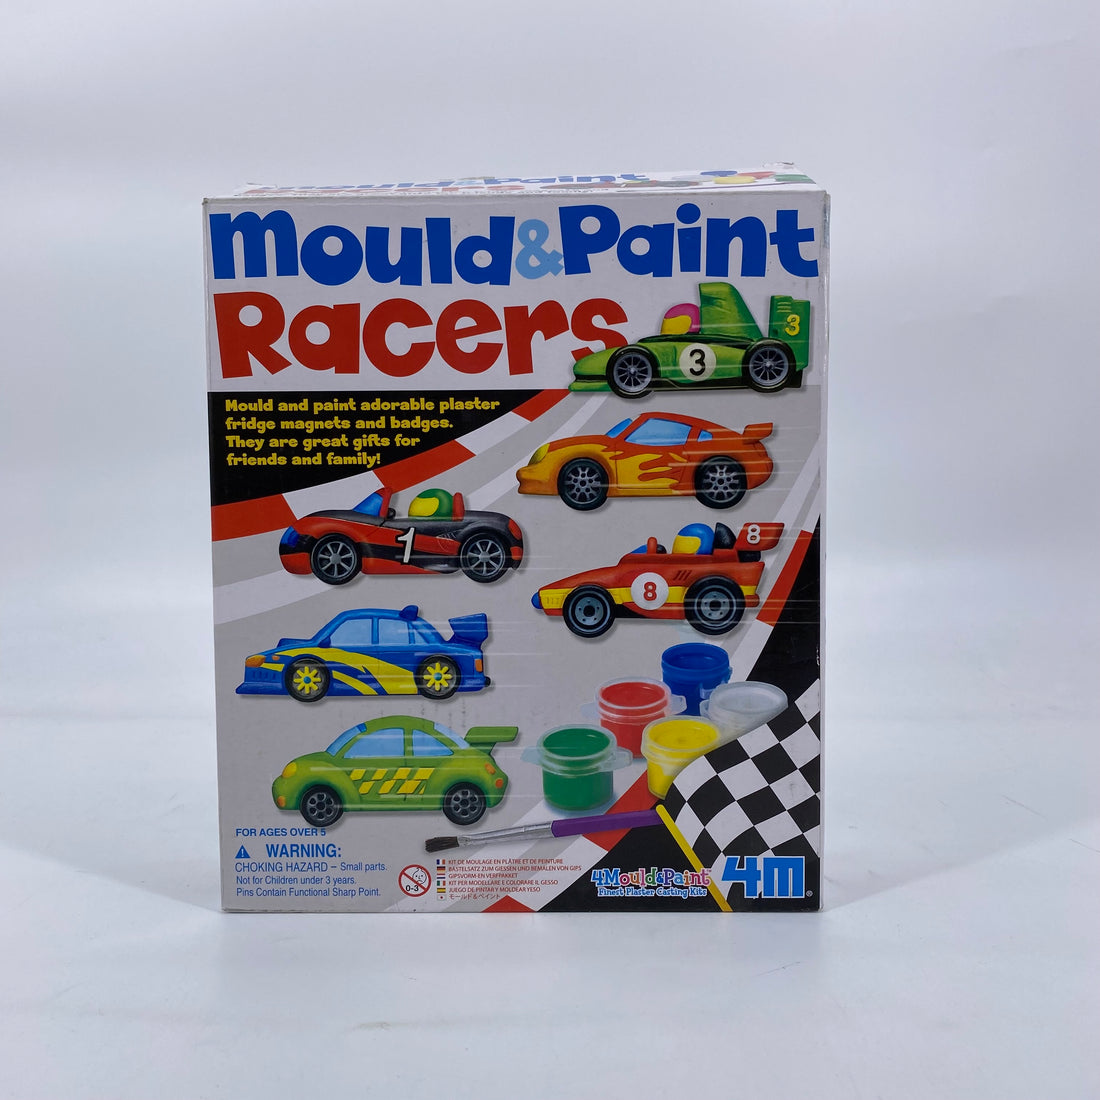 Mould &amp; paint racers